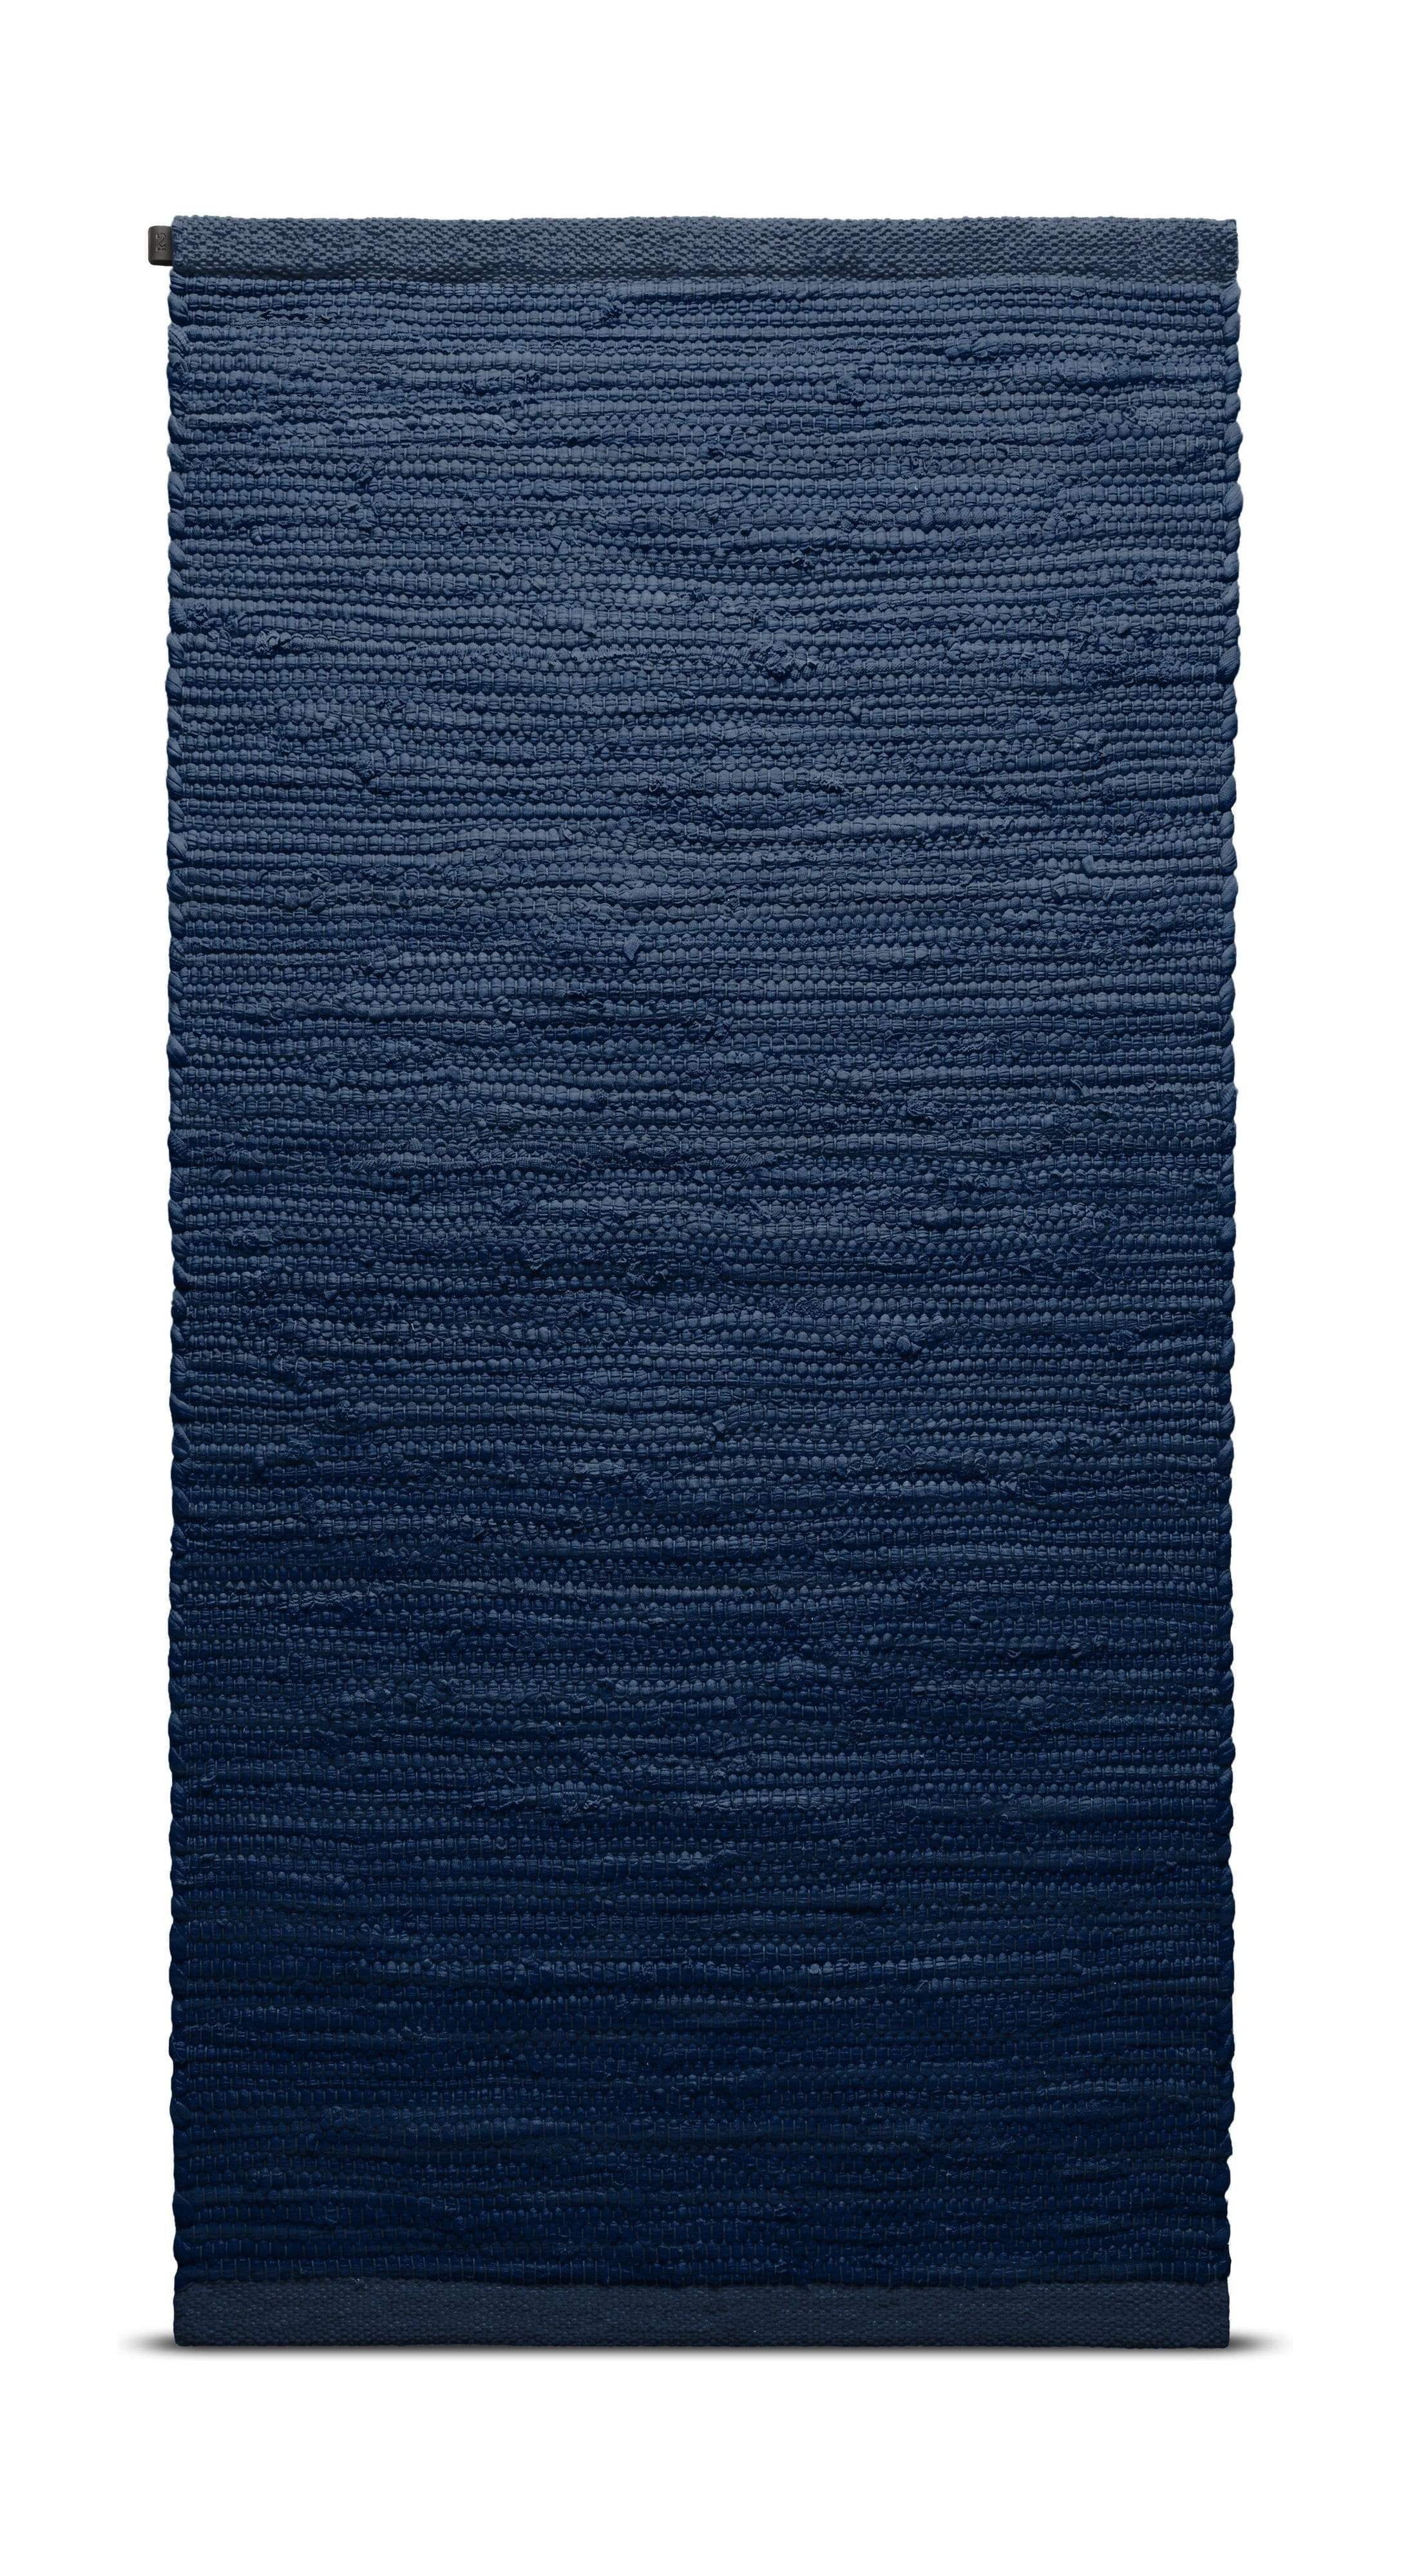 Rug Solid Bomullsmatta 170 x 240 cm, blåbär